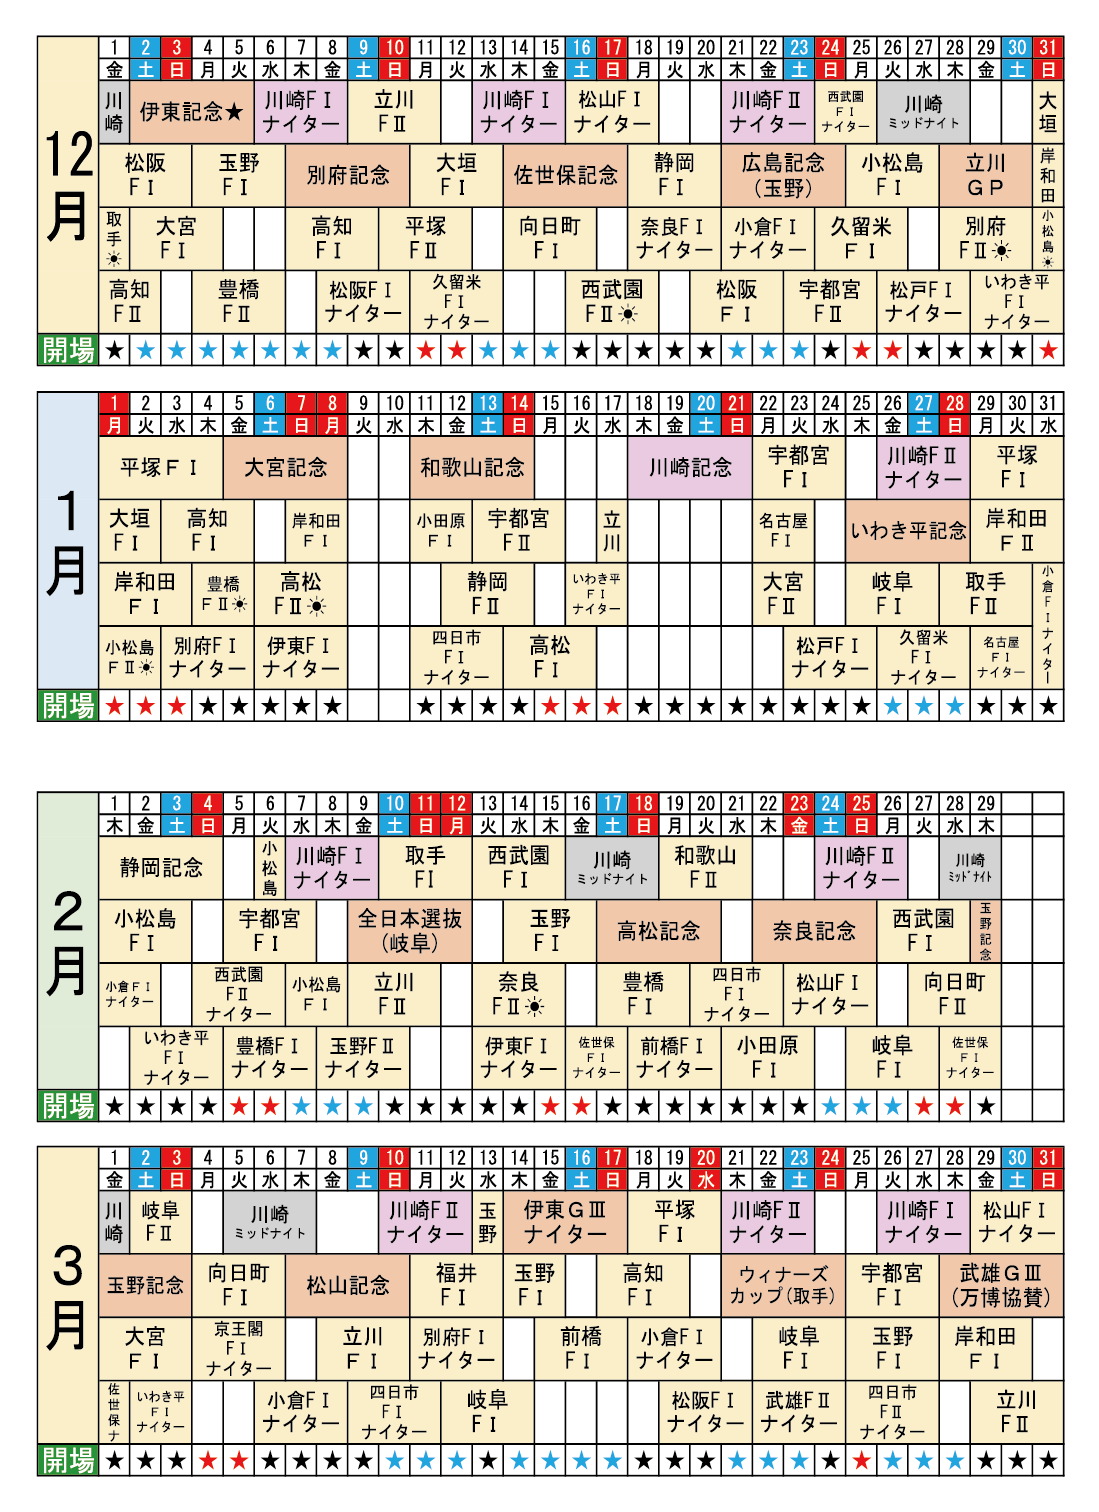 外向け前売投票所ポケットカレンダー2